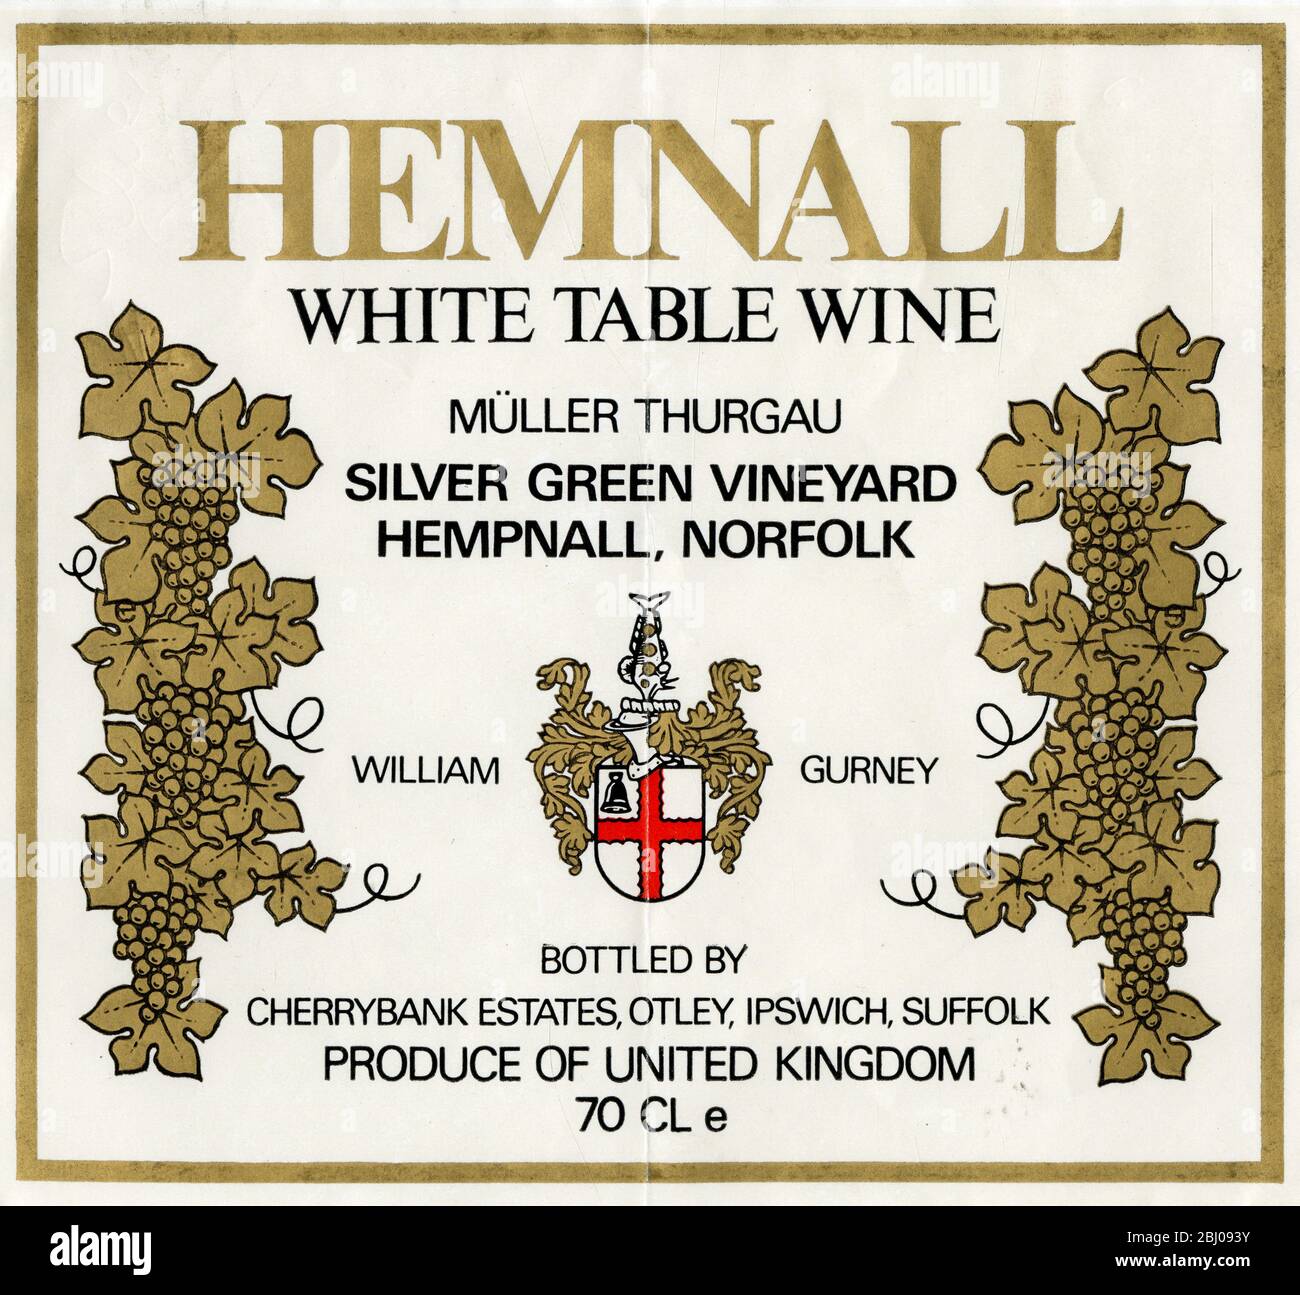 Weinetikett - Hemnall White Table Wine. Eine Rebsorte von Müller Thurgau, hergestellt von William Gurney von Silver Green Vineyard, Hempnall, Norfolk. Stockfoto